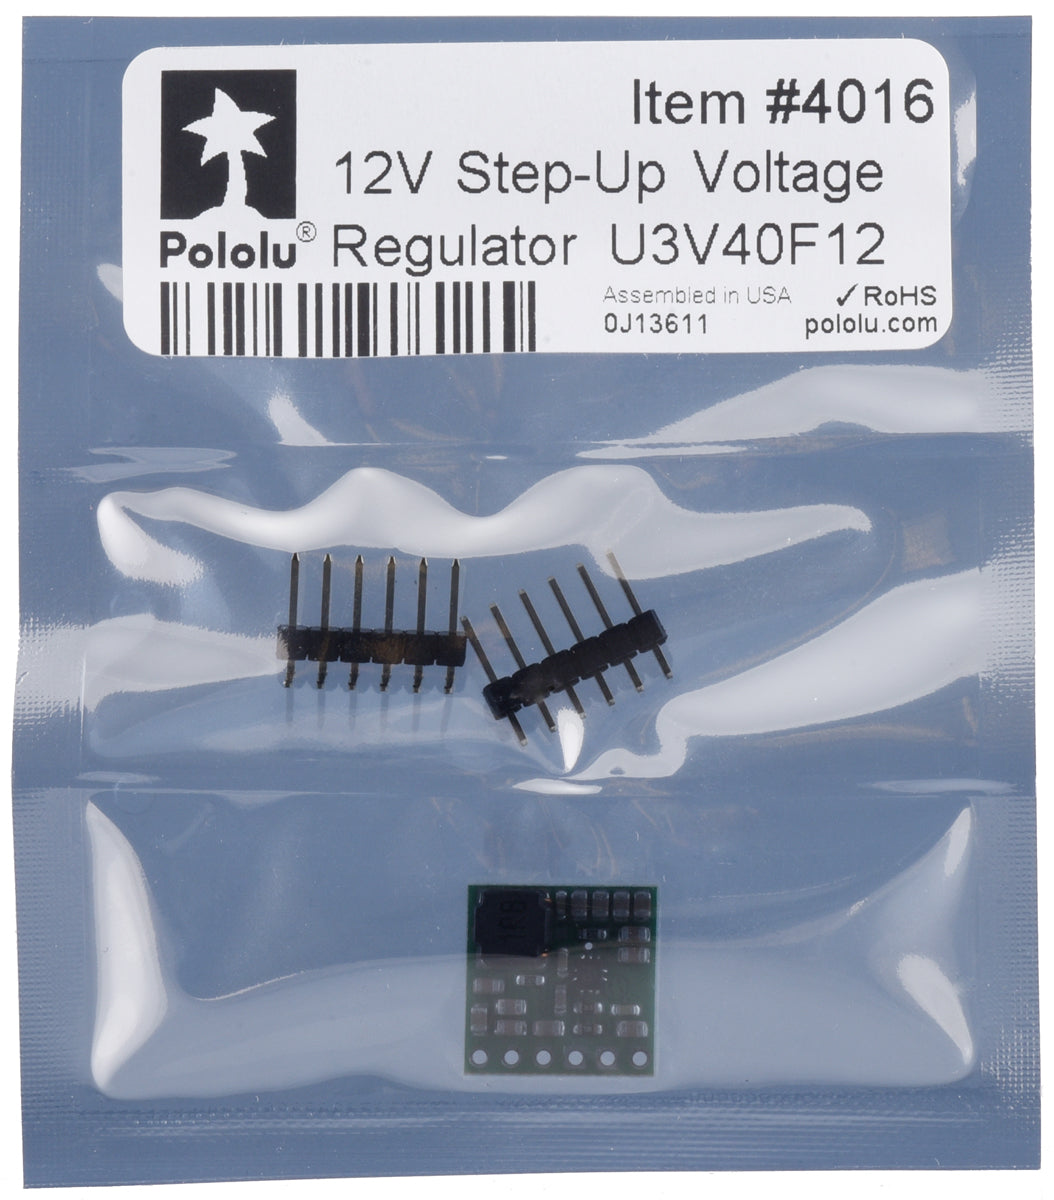 12V Step-Up Voltage Regulator U3V40F12